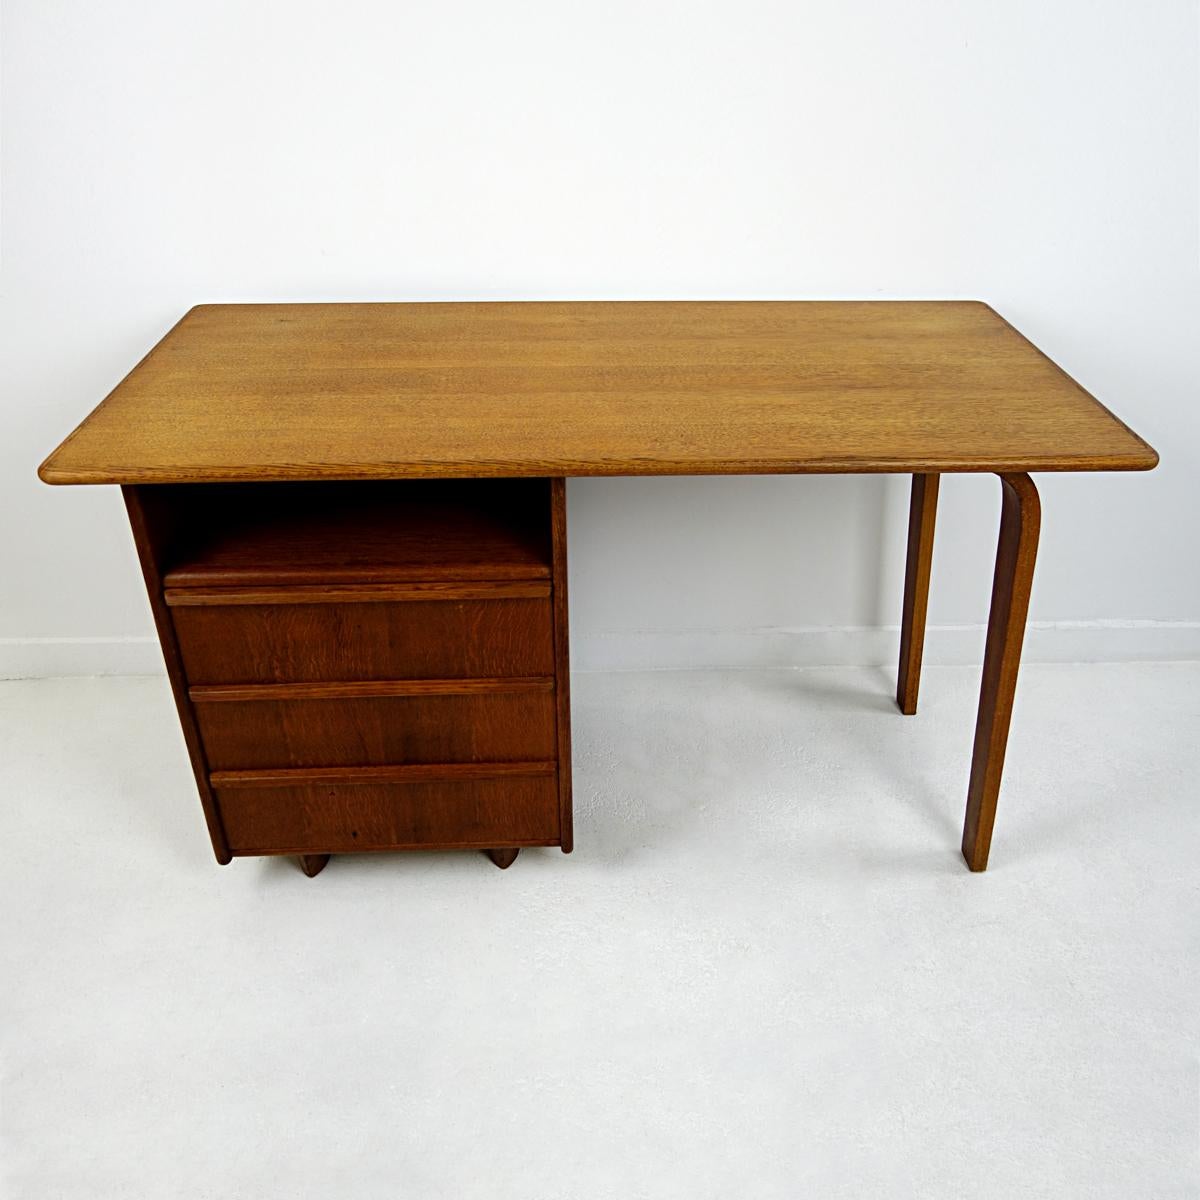 Sehr eleganter Schreibtisch von USM Pastoe.
Dieser Schreibtisch wurde in den frühen fünfziger Jahren von Cees Braakman entworfen und gehört zur Eichenholzserie.

  